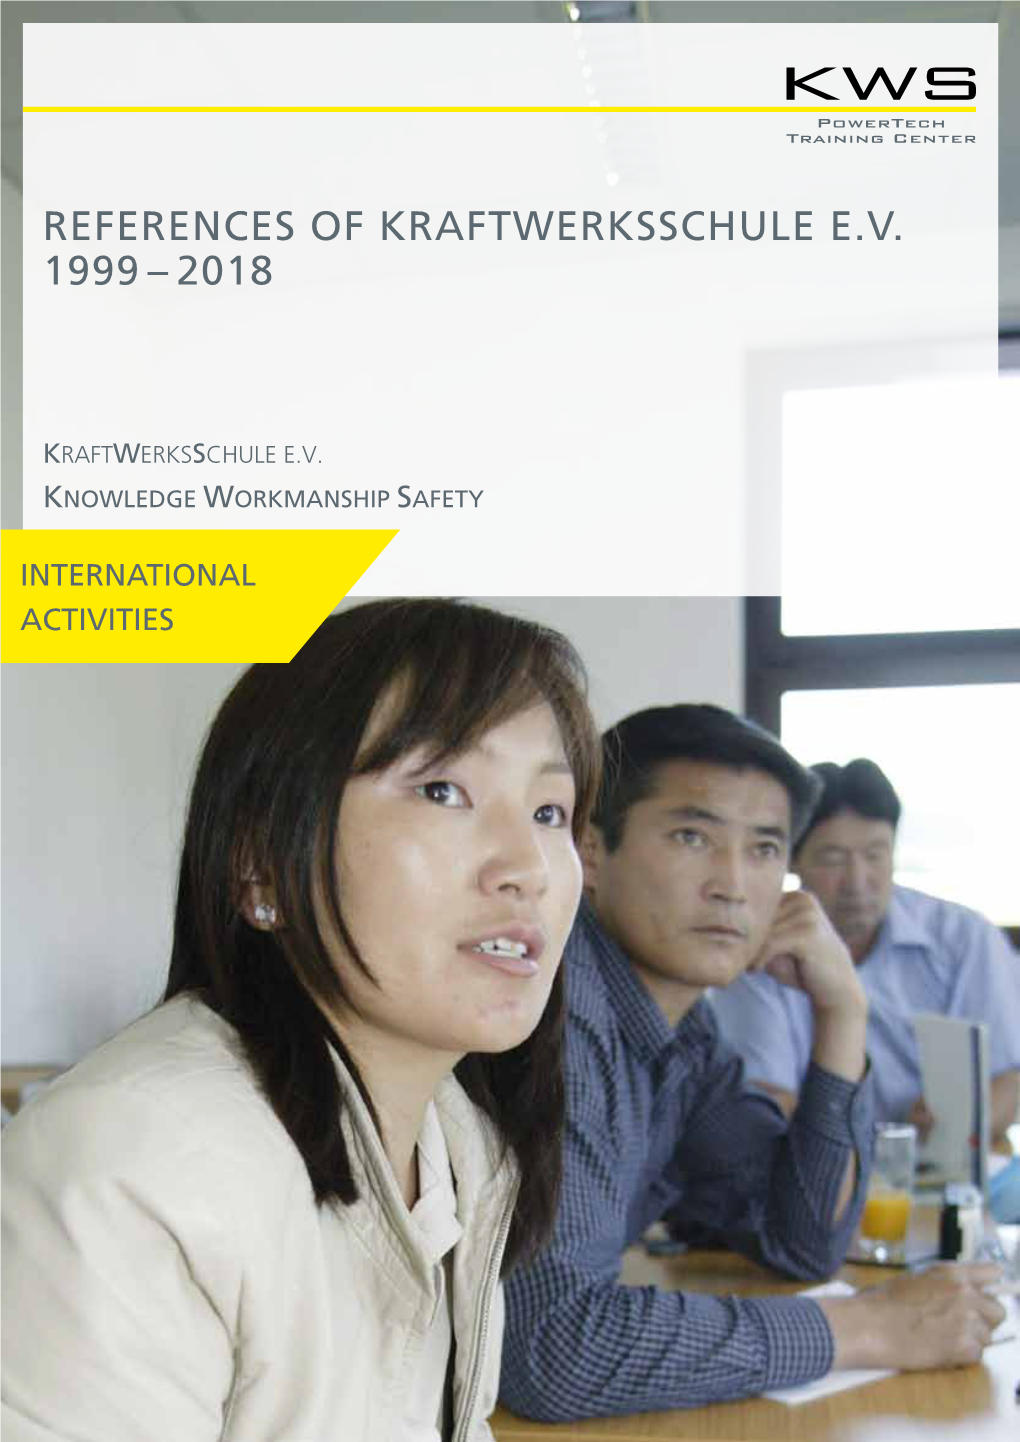 References of Kraftwerksschule E.V. 1999 – 2018